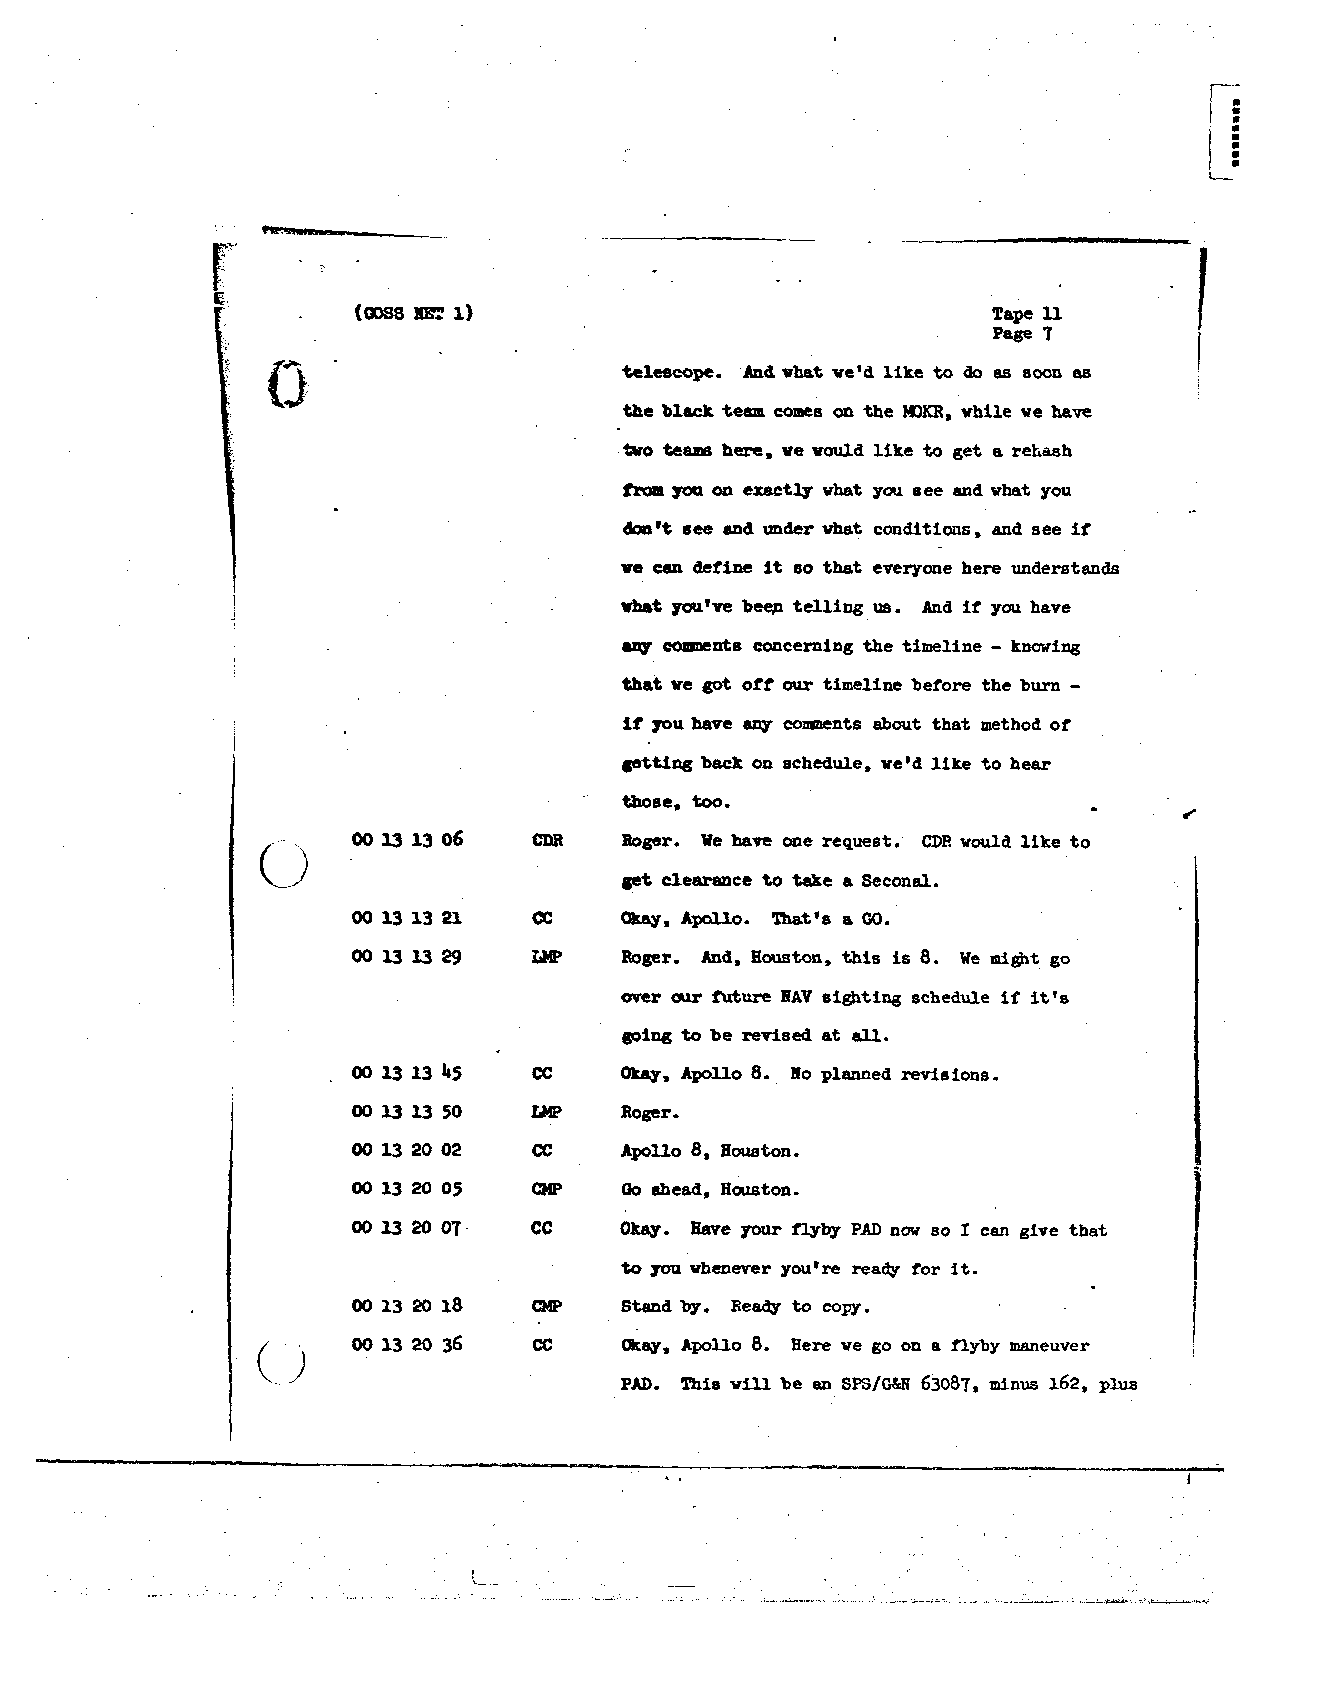 Page 109 of Apollo 8’s original transcript